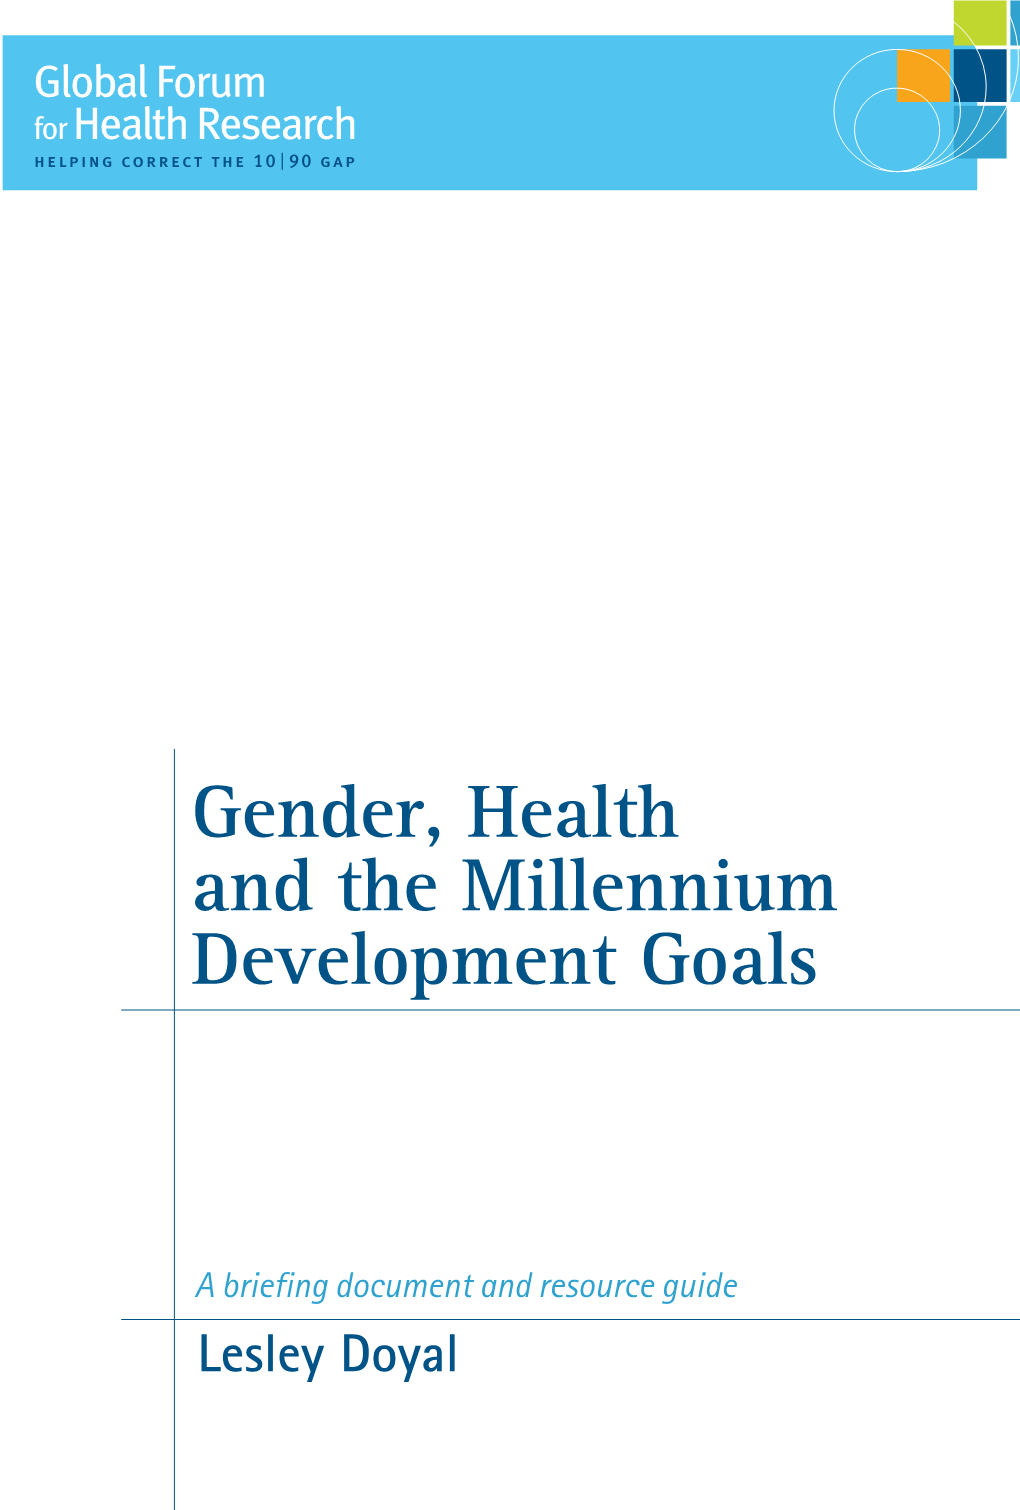 Gender, Health and the Millennium Development Goals